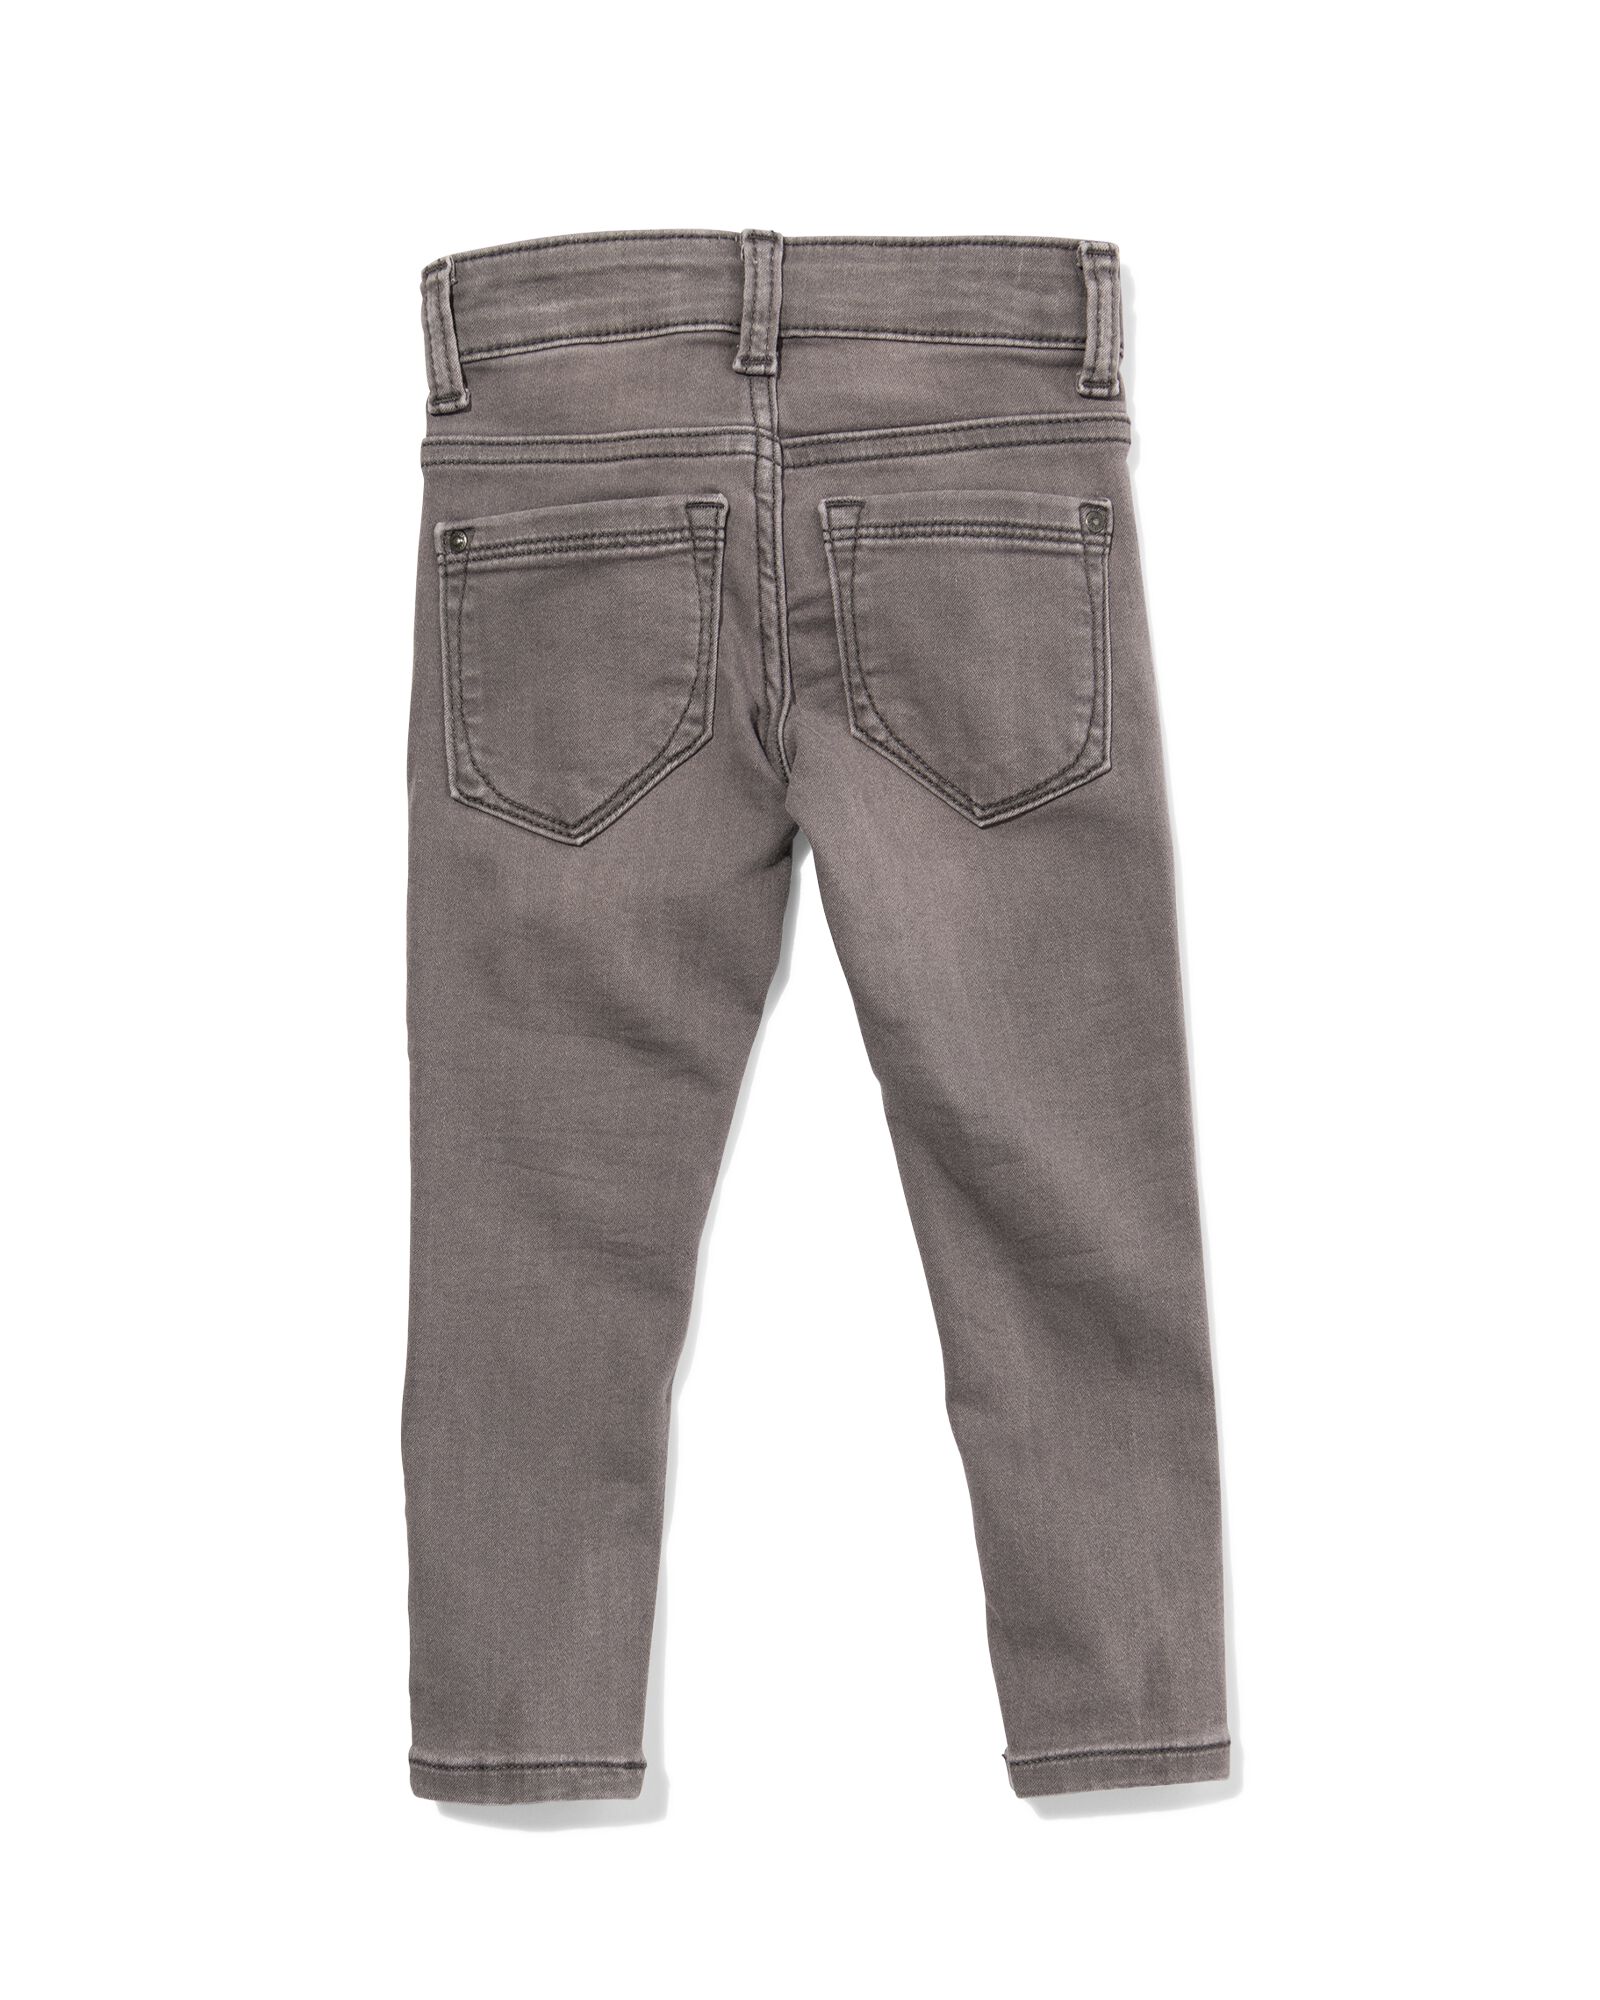 kinder jeans skinny fit grijs 128 - 30874877 - HEMA